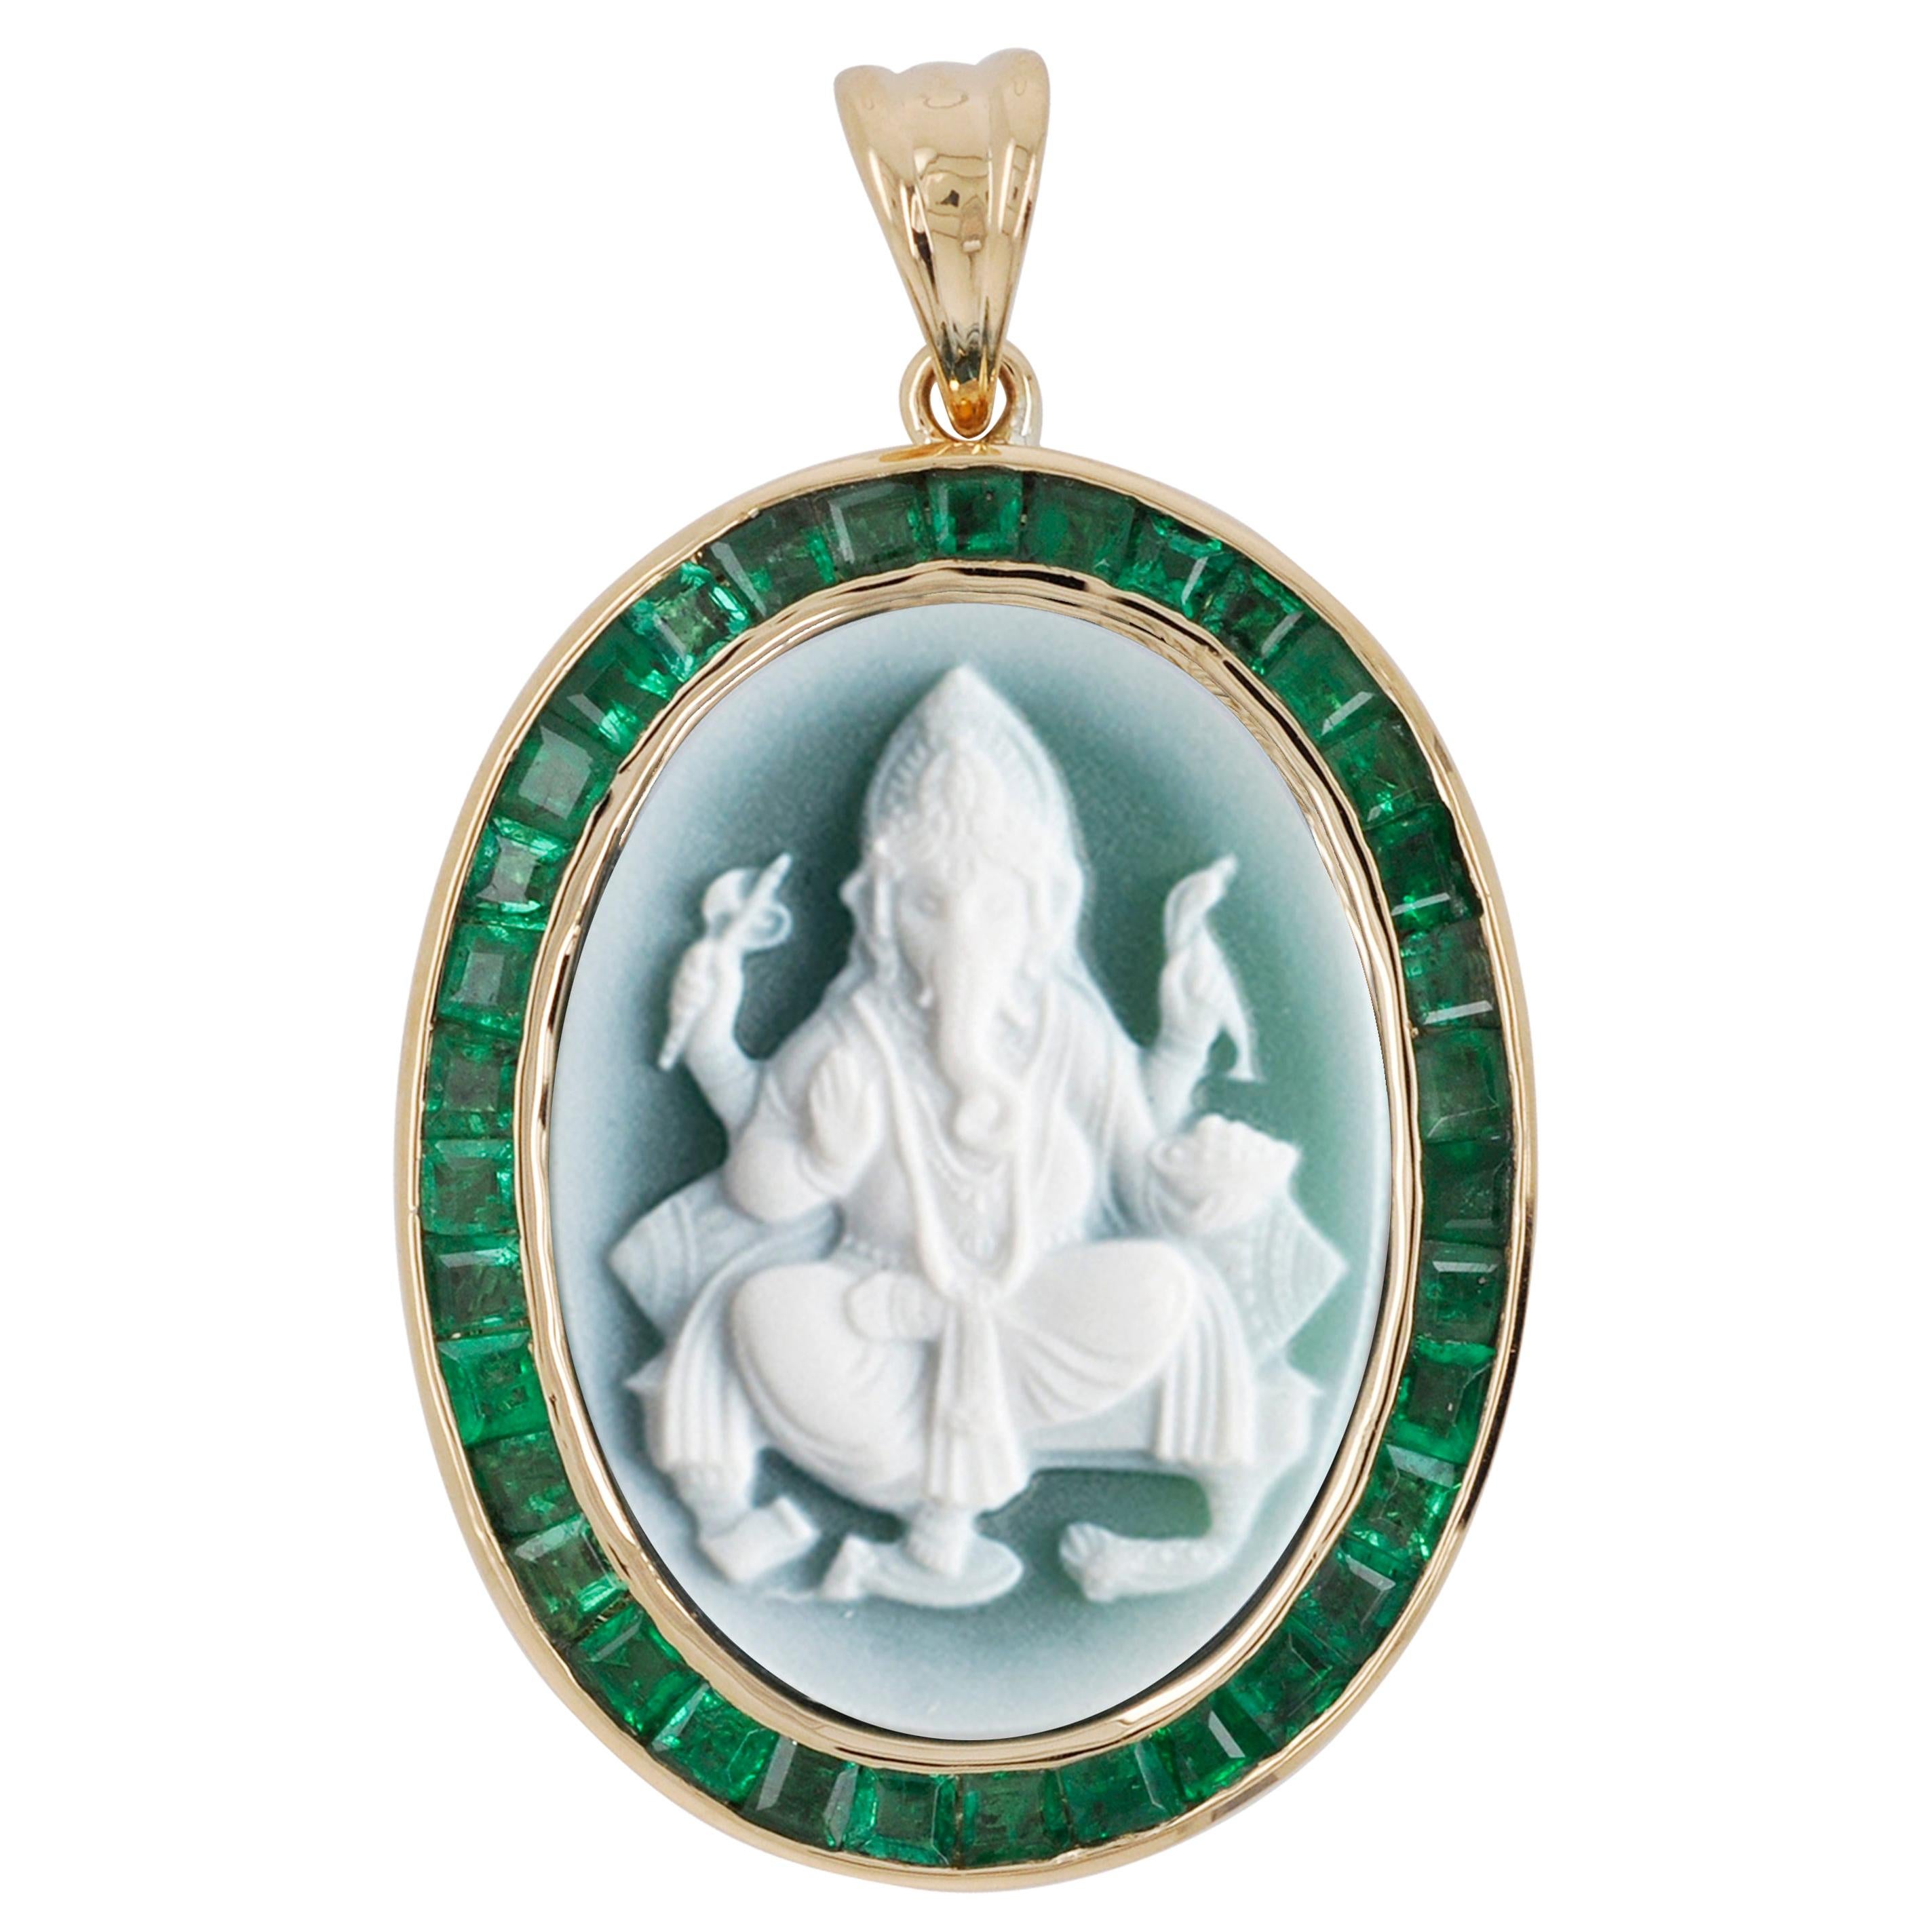 Collier pendentif contemporain en or 18 carats avec camée Ganesh en émeraude taillée en calibre